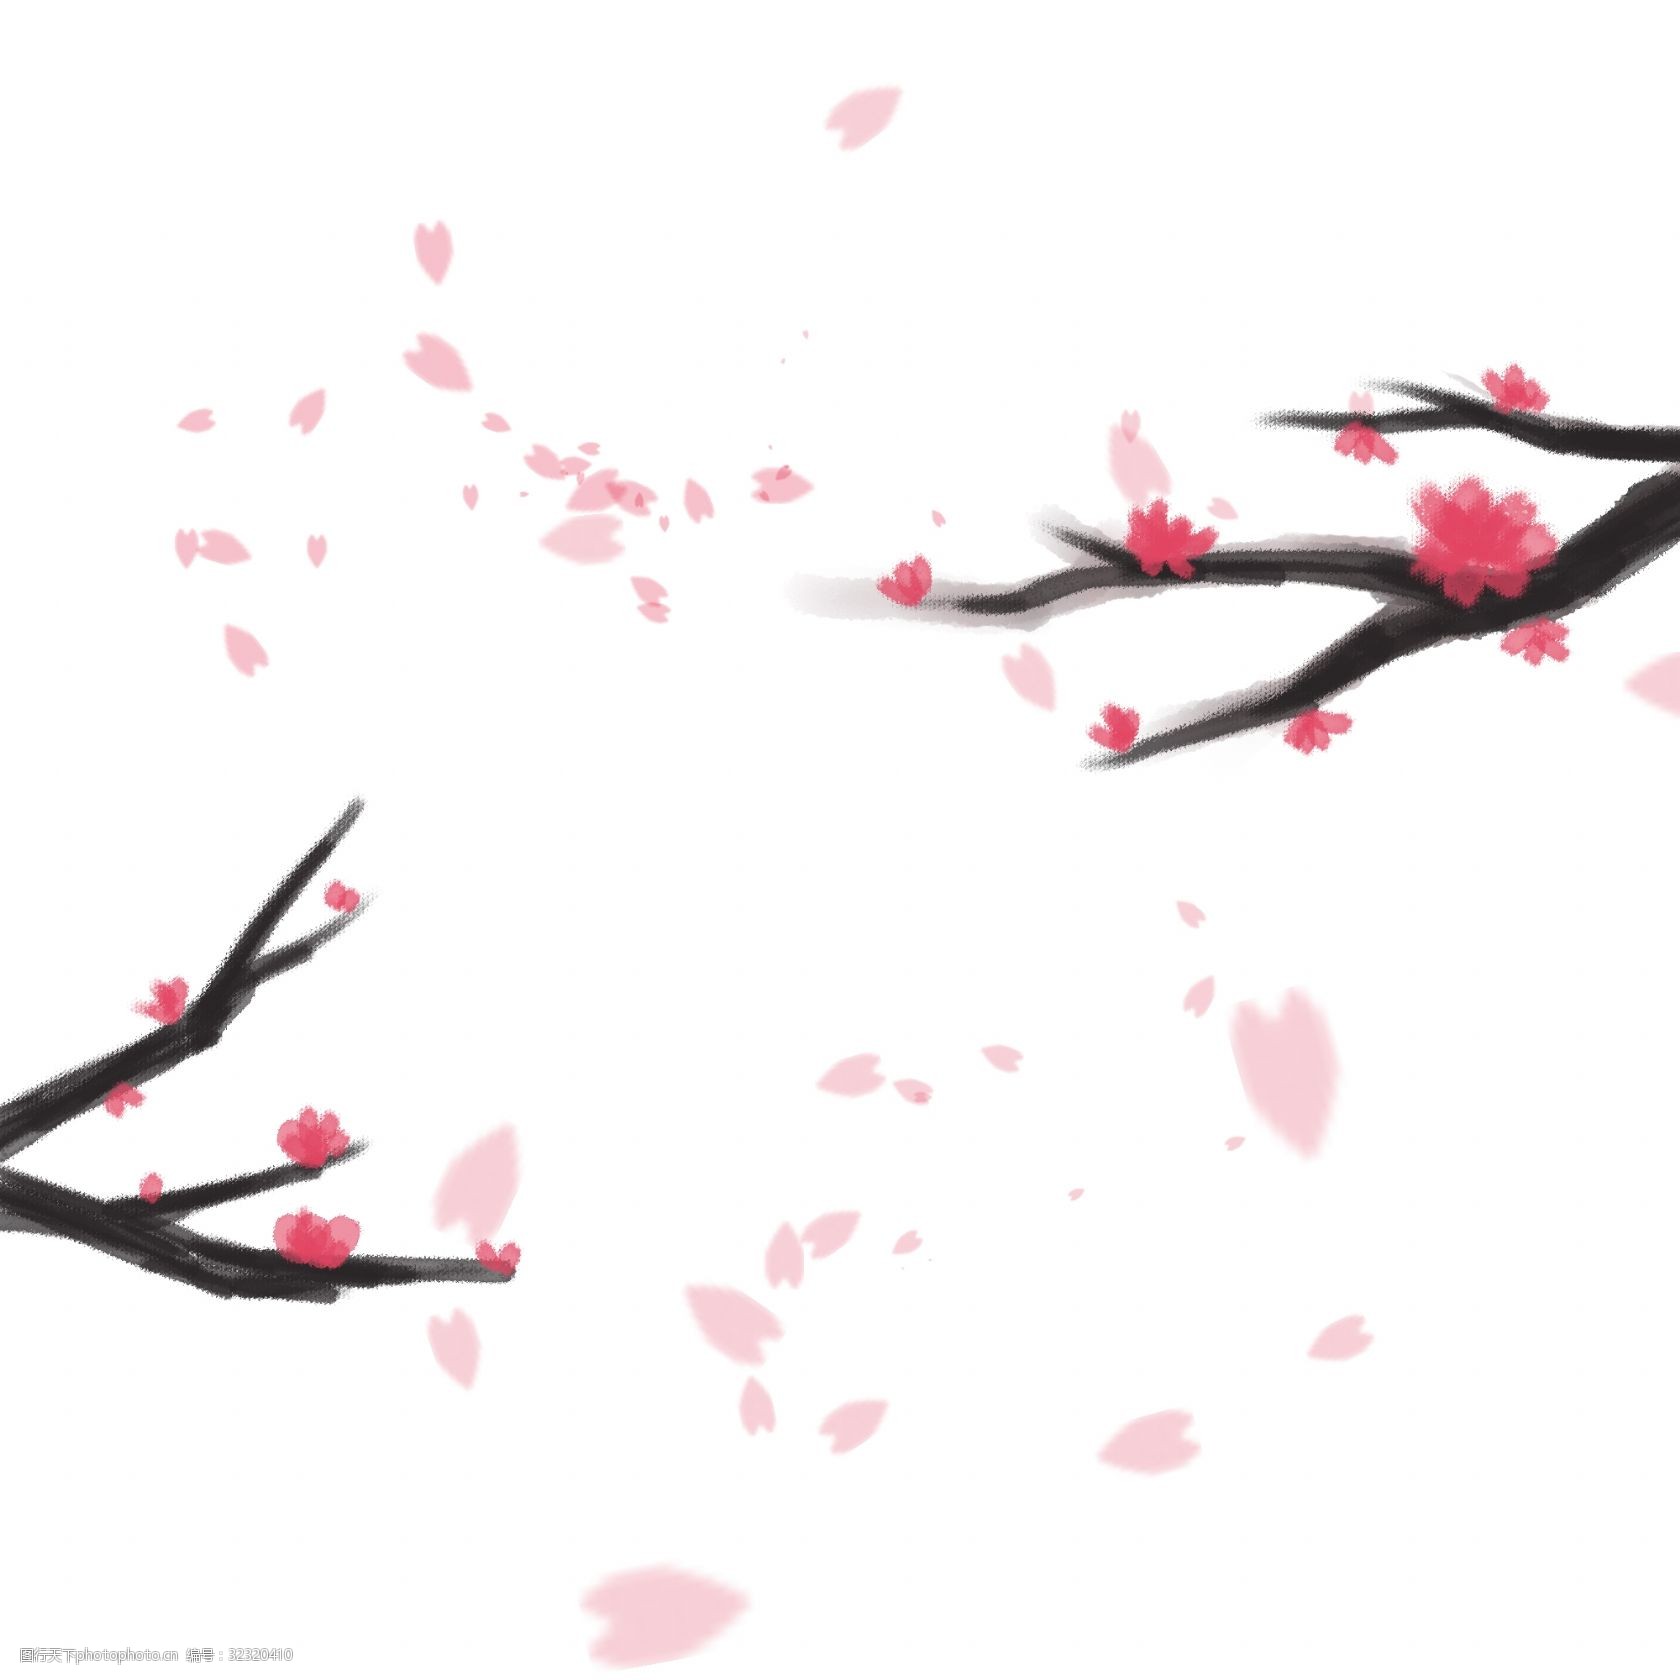 关键词:中国风手绘花瓣飘落 新年 梅花 花瓣 中国风 红色 红梅 装饰